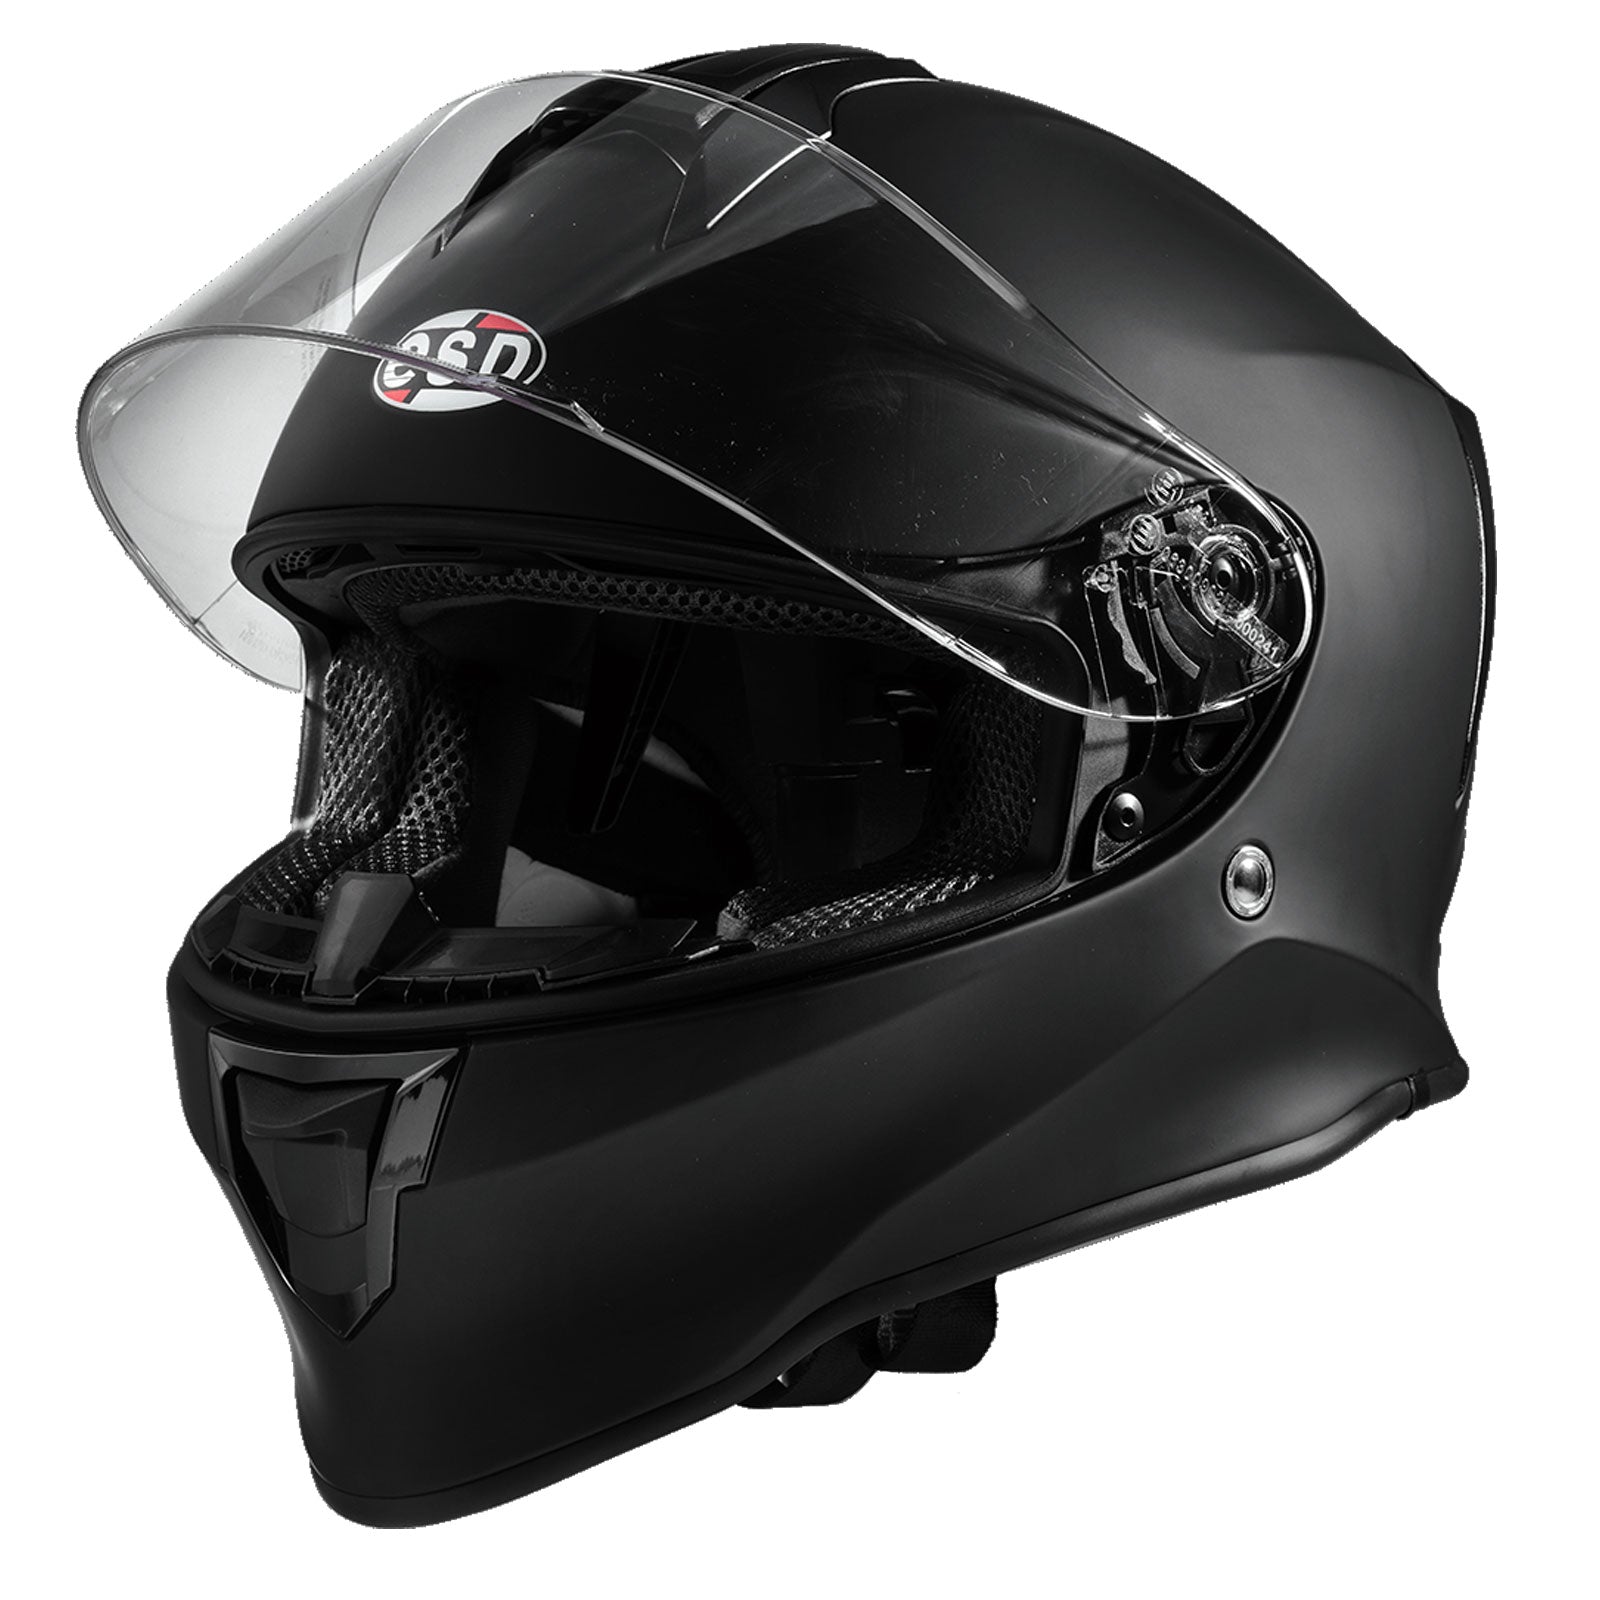 Eldorado Mens Motorcycle Helmet E21 Full Face